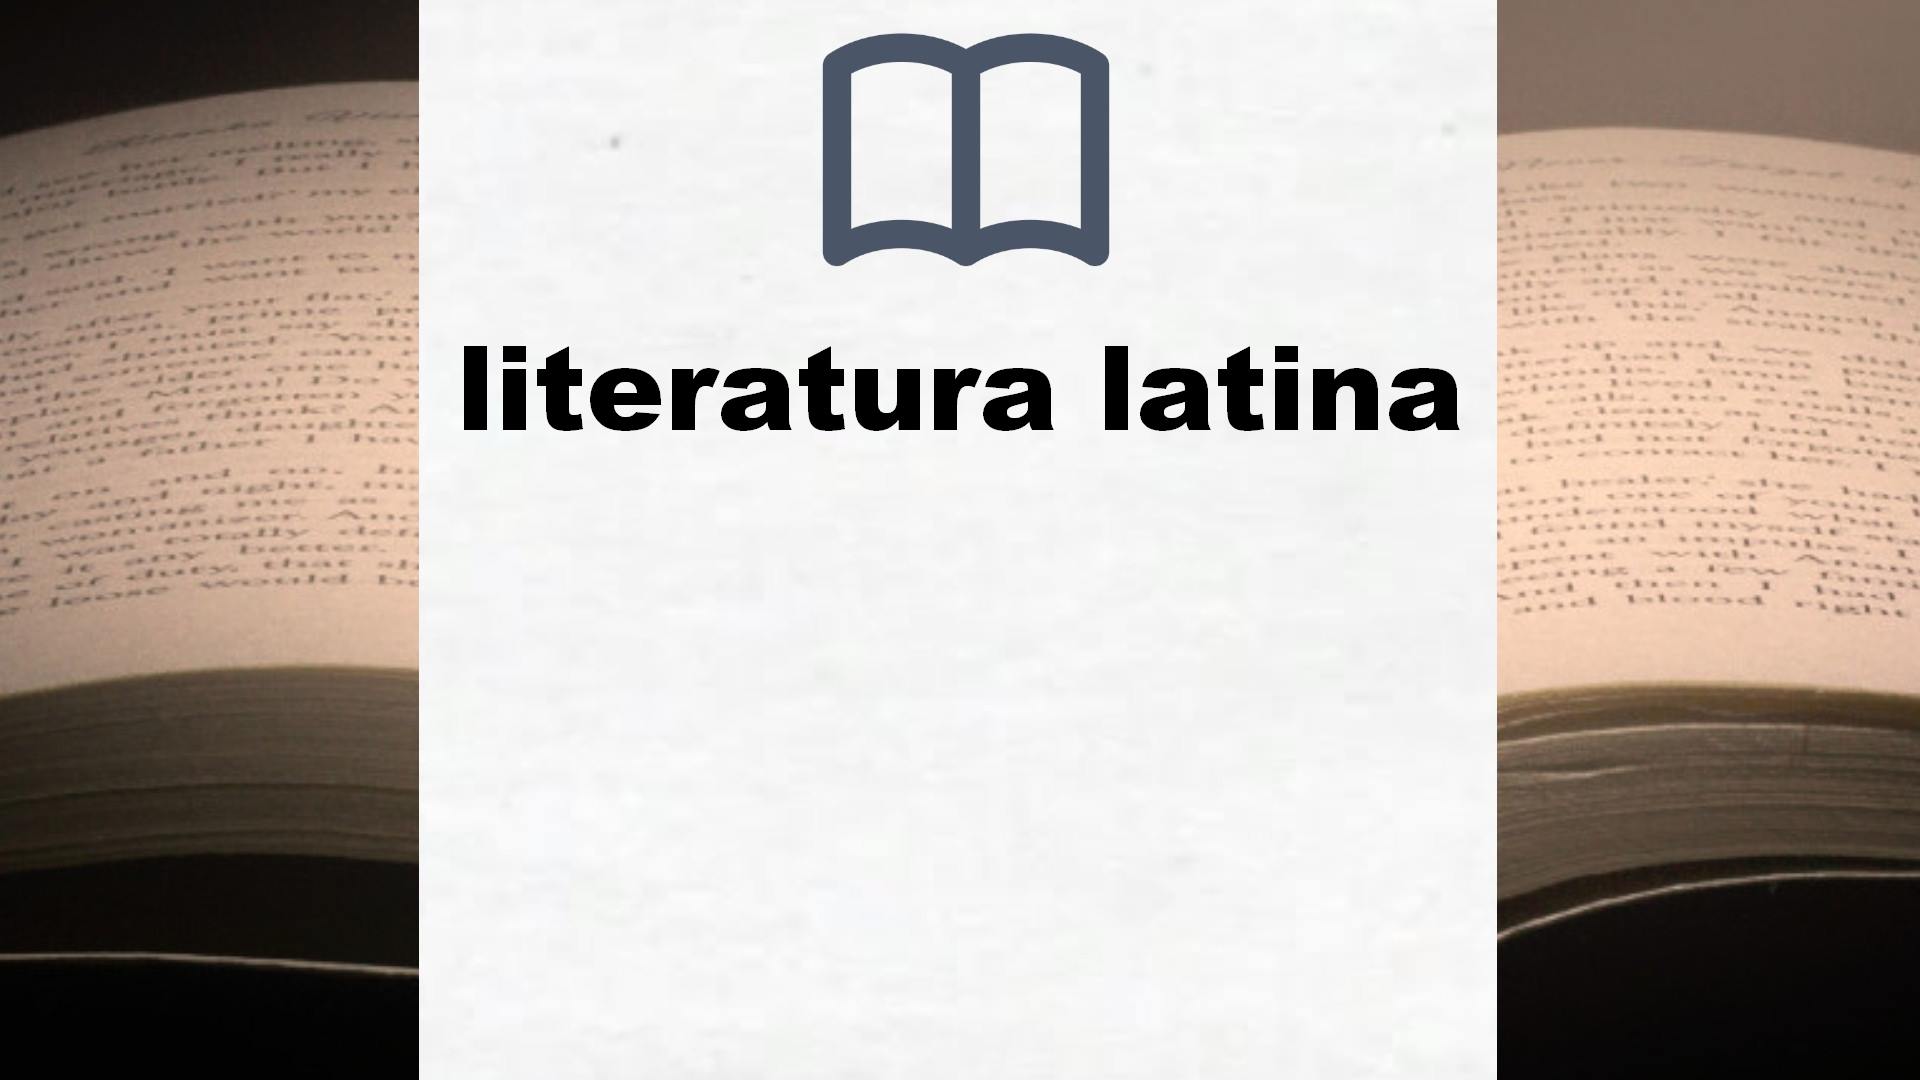 Libros sobre literatura latina